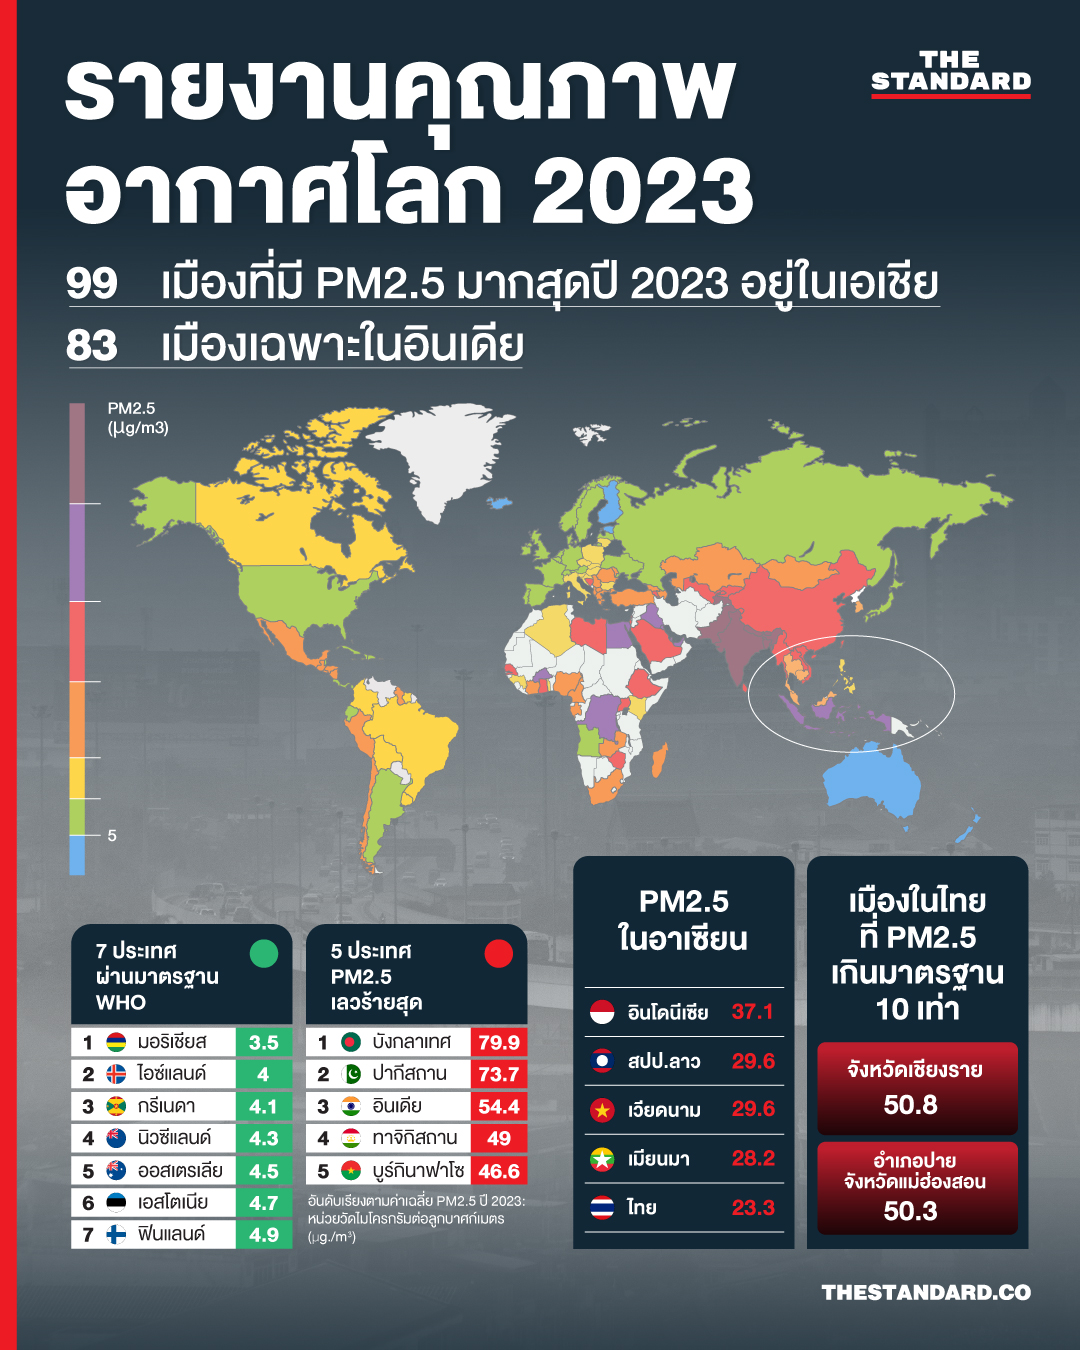 PM2.5 ในปี 2023